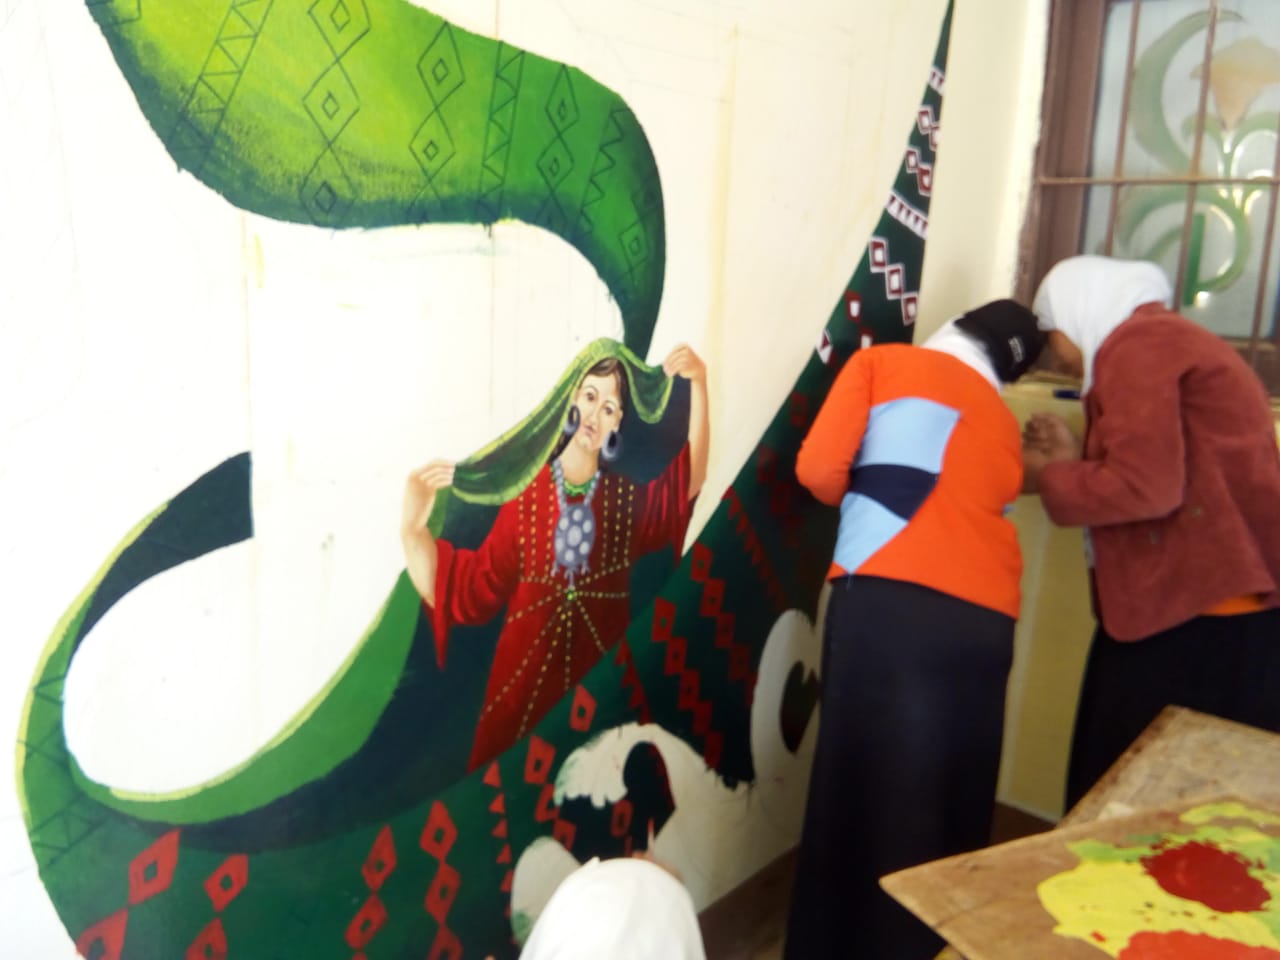 مبادرة فنية لتعليم طلاب الوادى الجديد الرسم وتجميل المدارس (2)